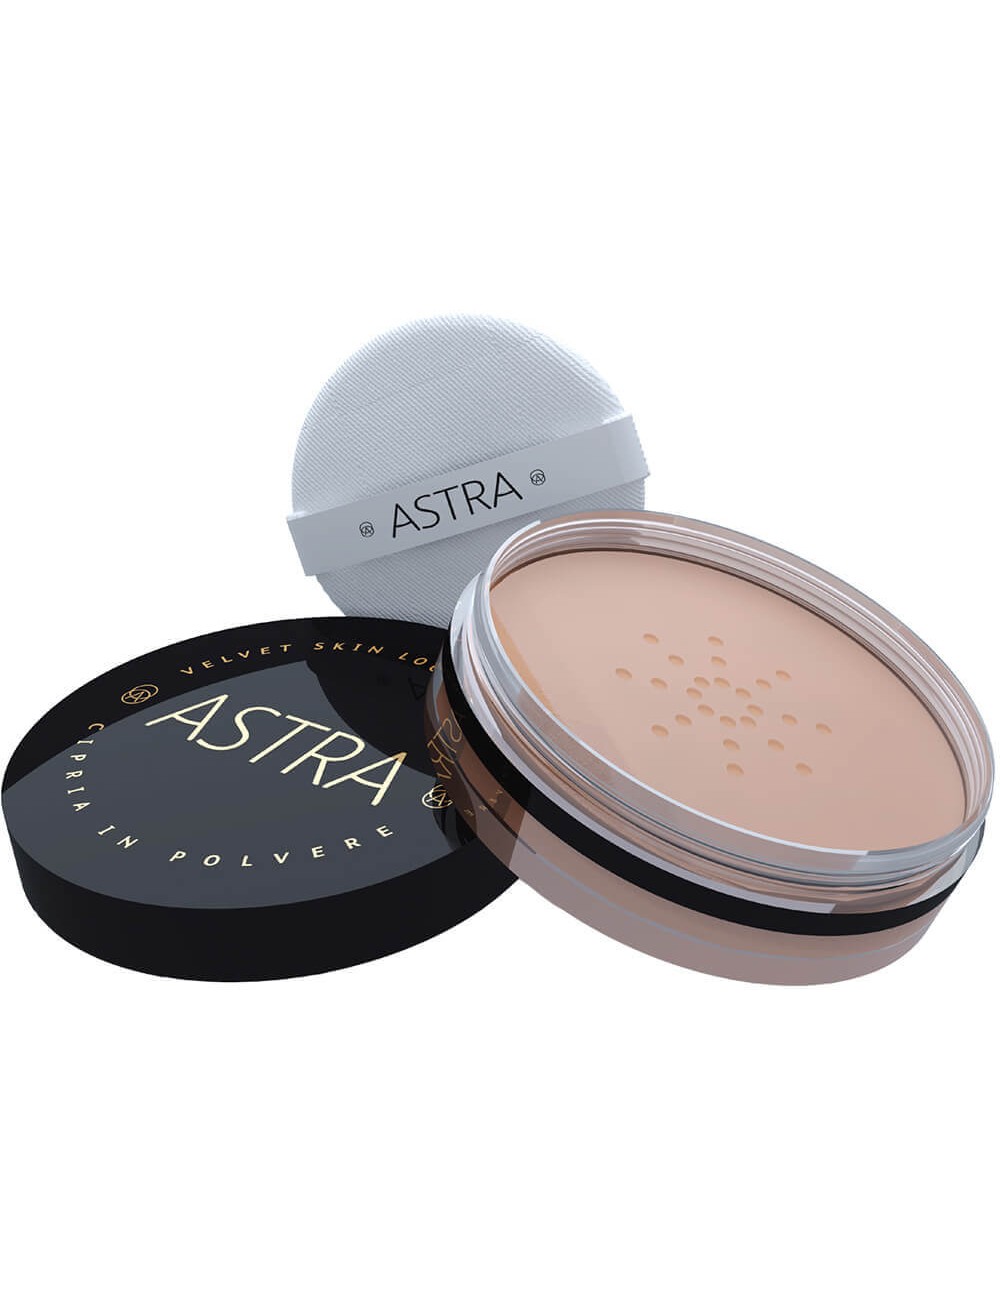 Image of Astra Velvet Skin - Loose Powder Cipria in polvere - 02